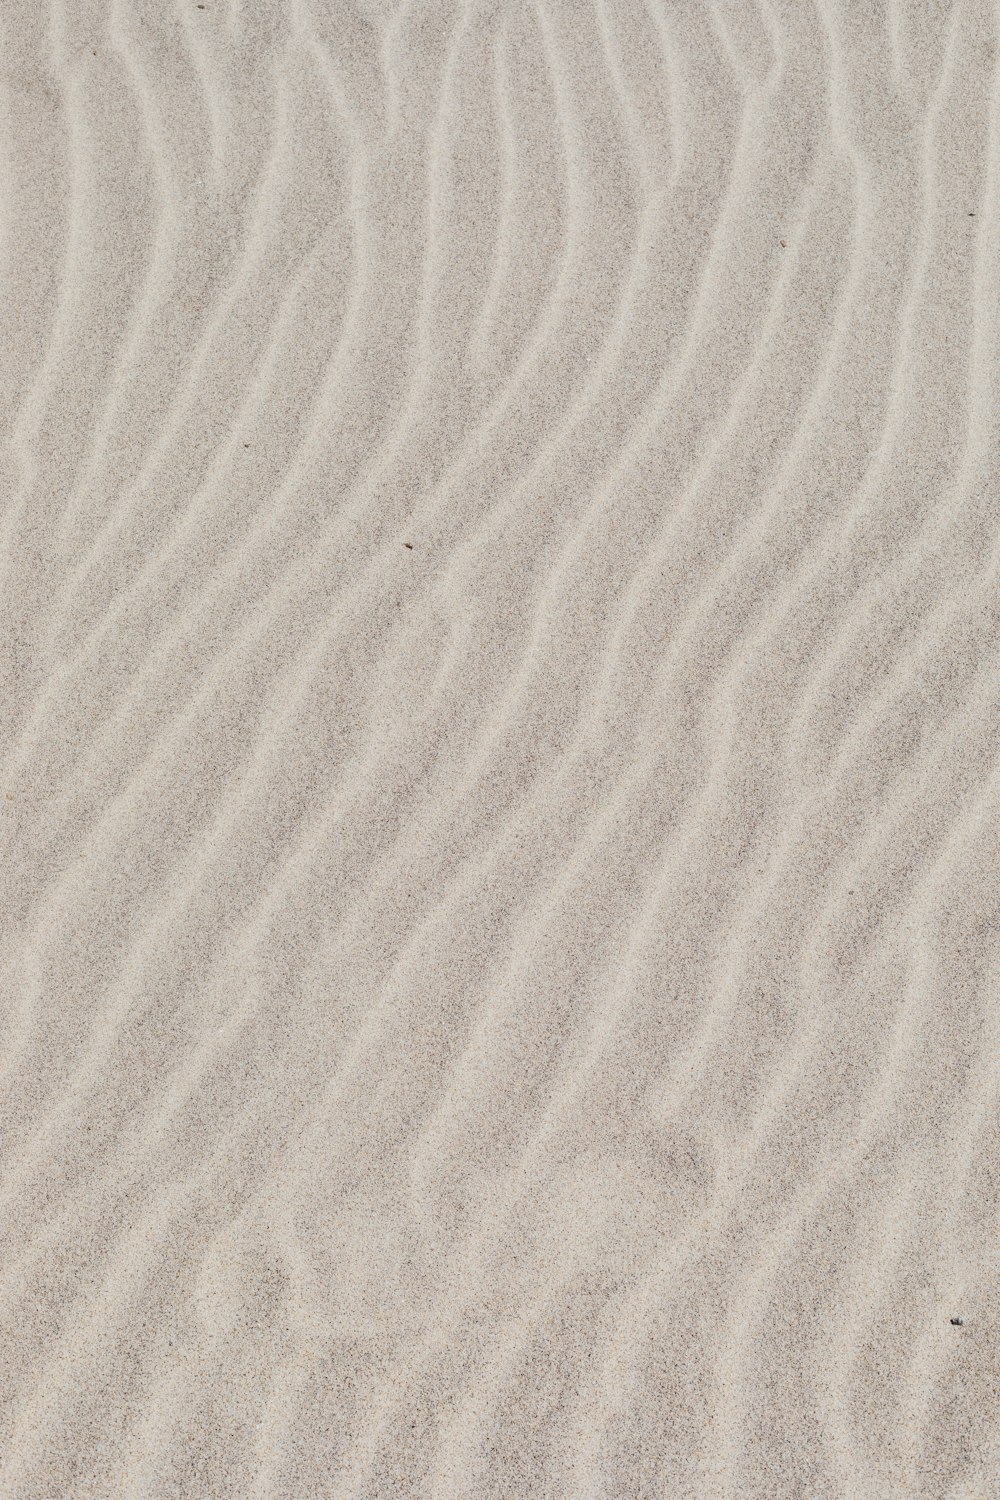 人の影のある白い砂浜